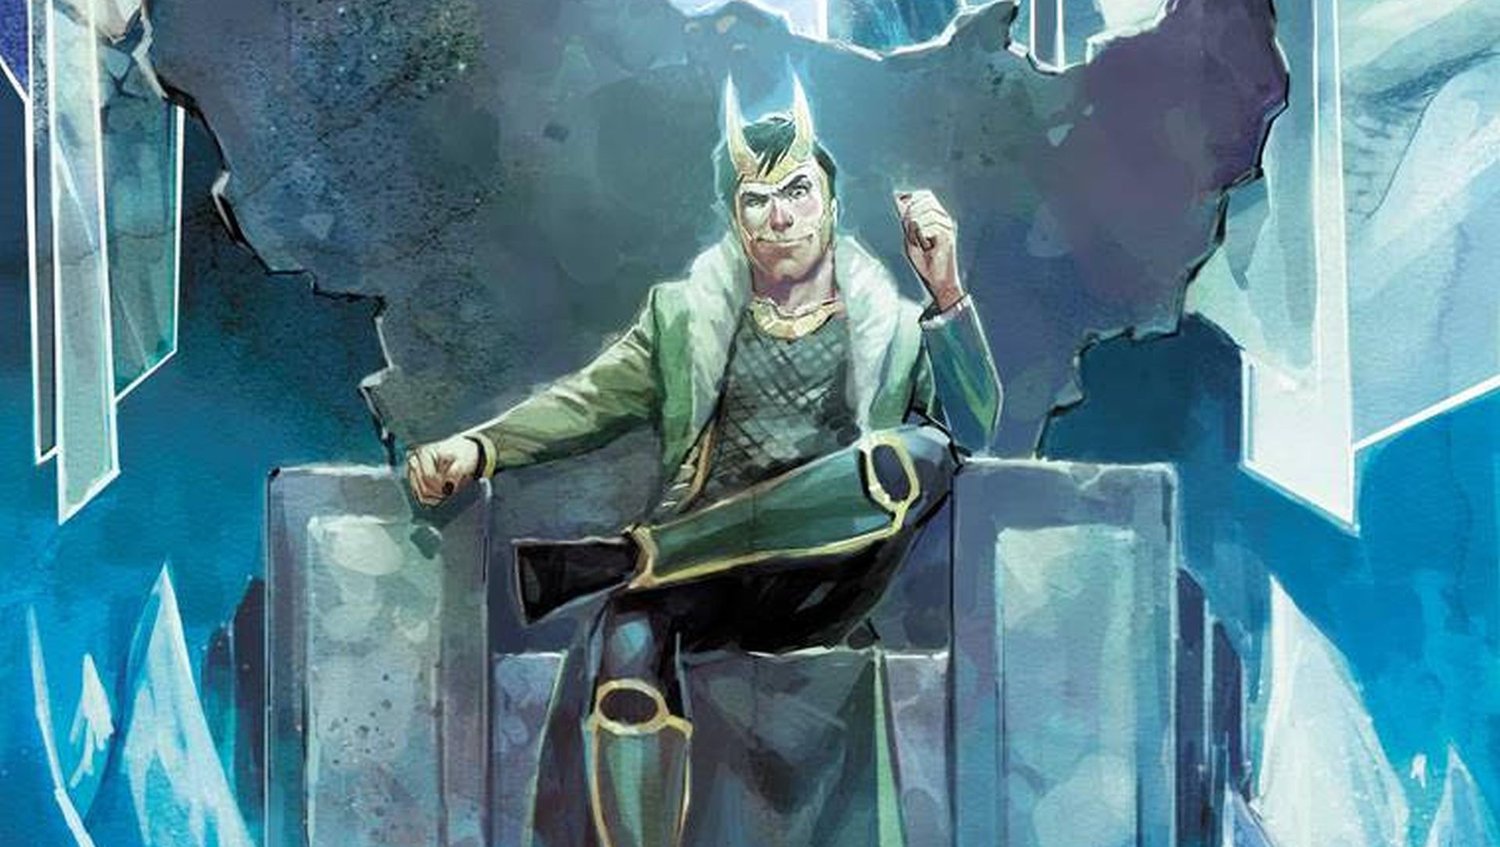 Préparez-vous pour les méfaits et le chaos dans la nouvelle série de bandes dessinées Solo Loki à venir